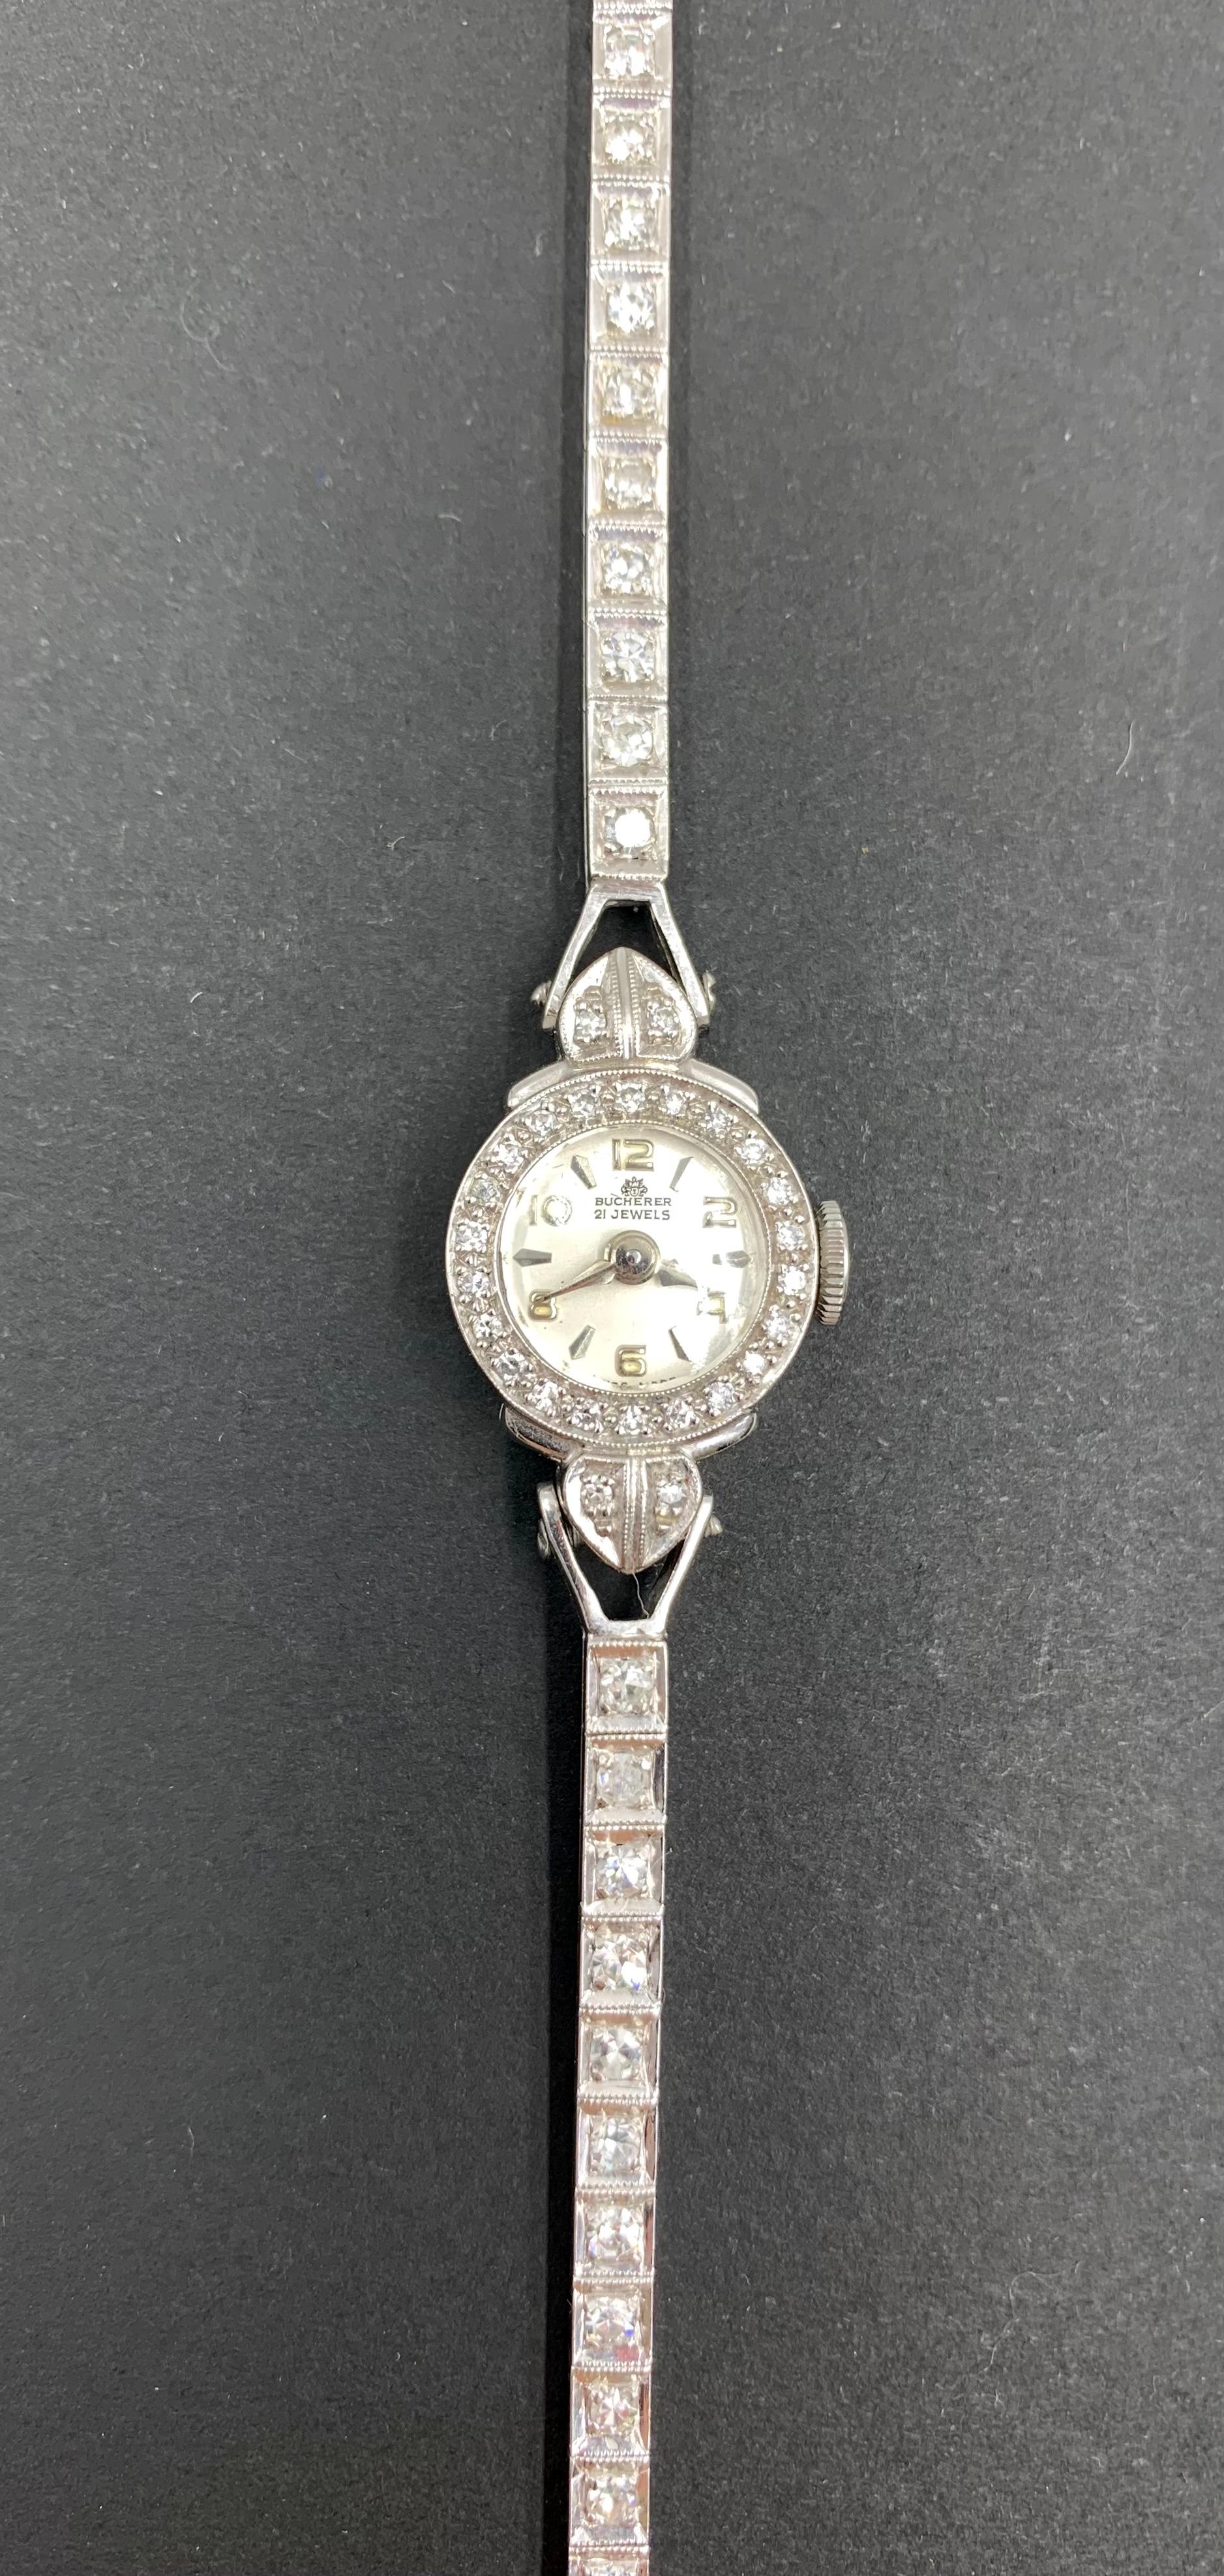 Elegante Art Deco Periode Bucherer Diamant, Platin, 14K Weißgold Armbanduhr von zierlicher Form.
Anfang des 20. Jahrhunderts
Mini-Uhren haben im Laufe der Jahre einige fabelhafte Handgelenke geziert - Königin Elisabeth II. trug eine zu ihrer